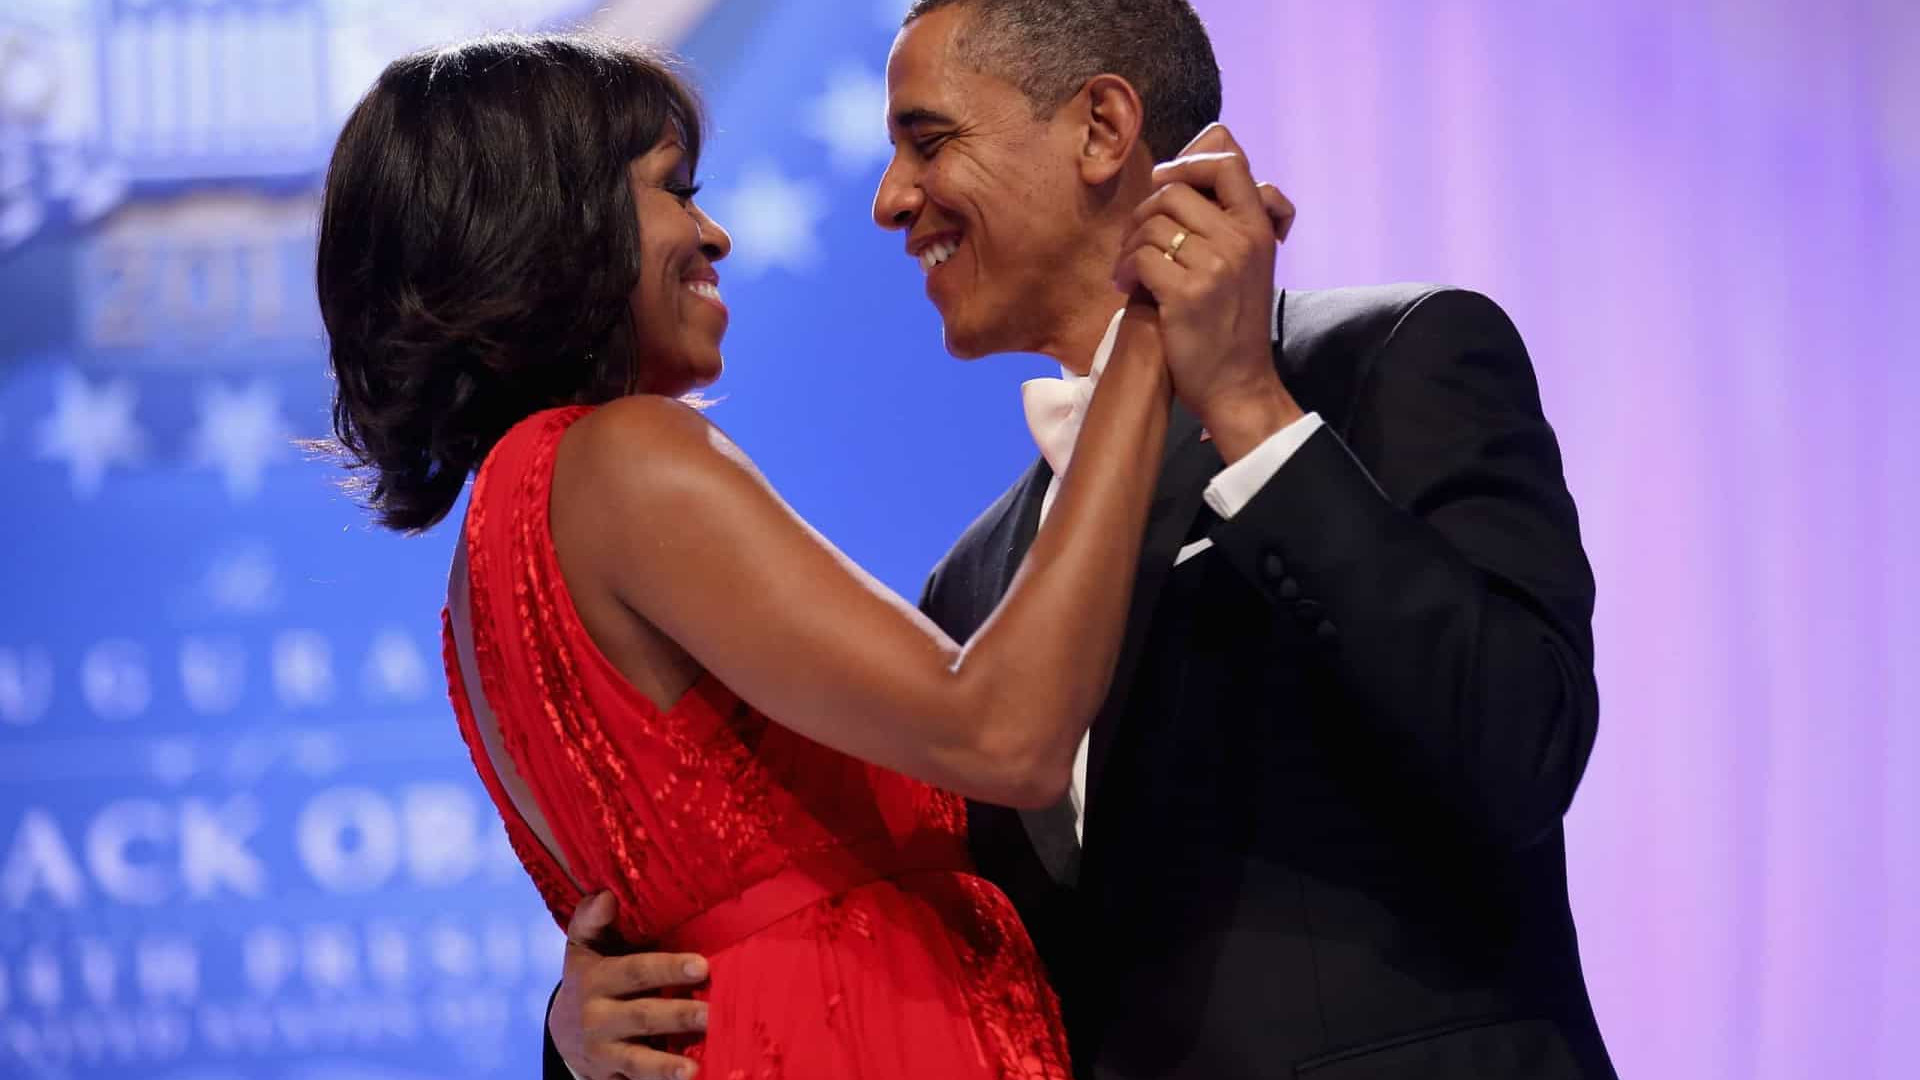 'Sorte de chamar de minha', escreve Barack no aniversário de casamento com Michelle